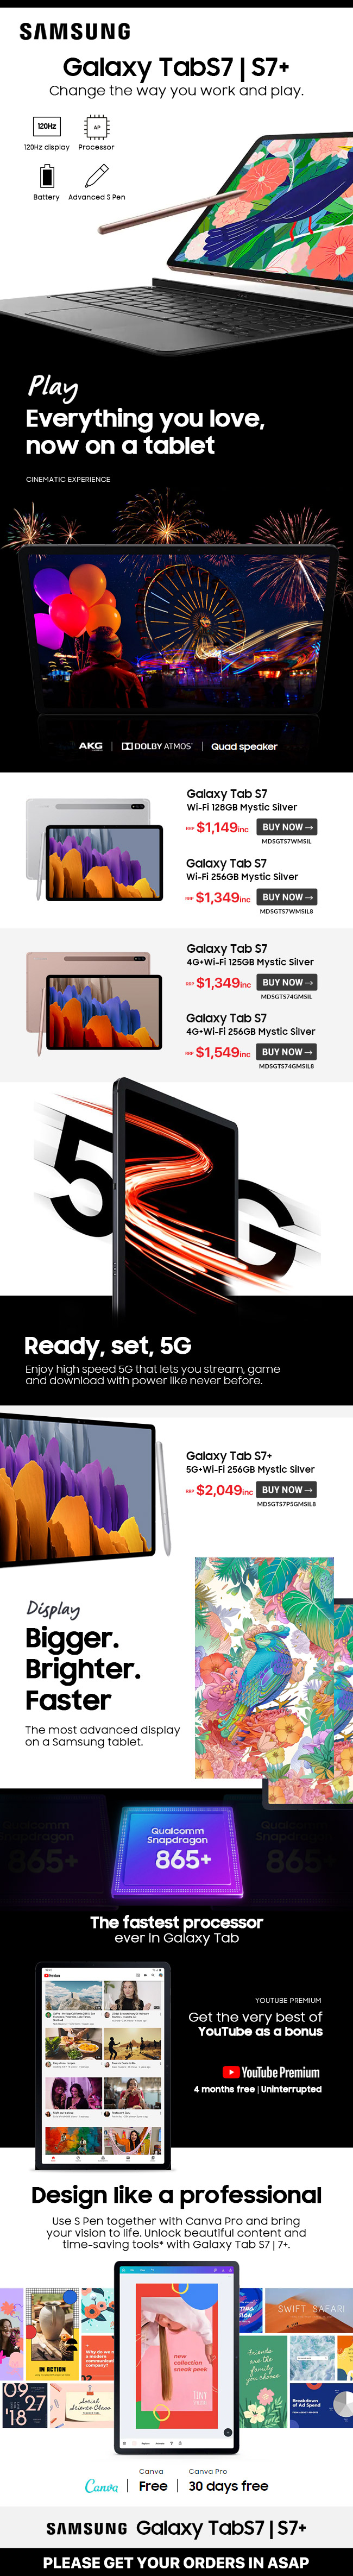 Samsung Galaxy TAB S7